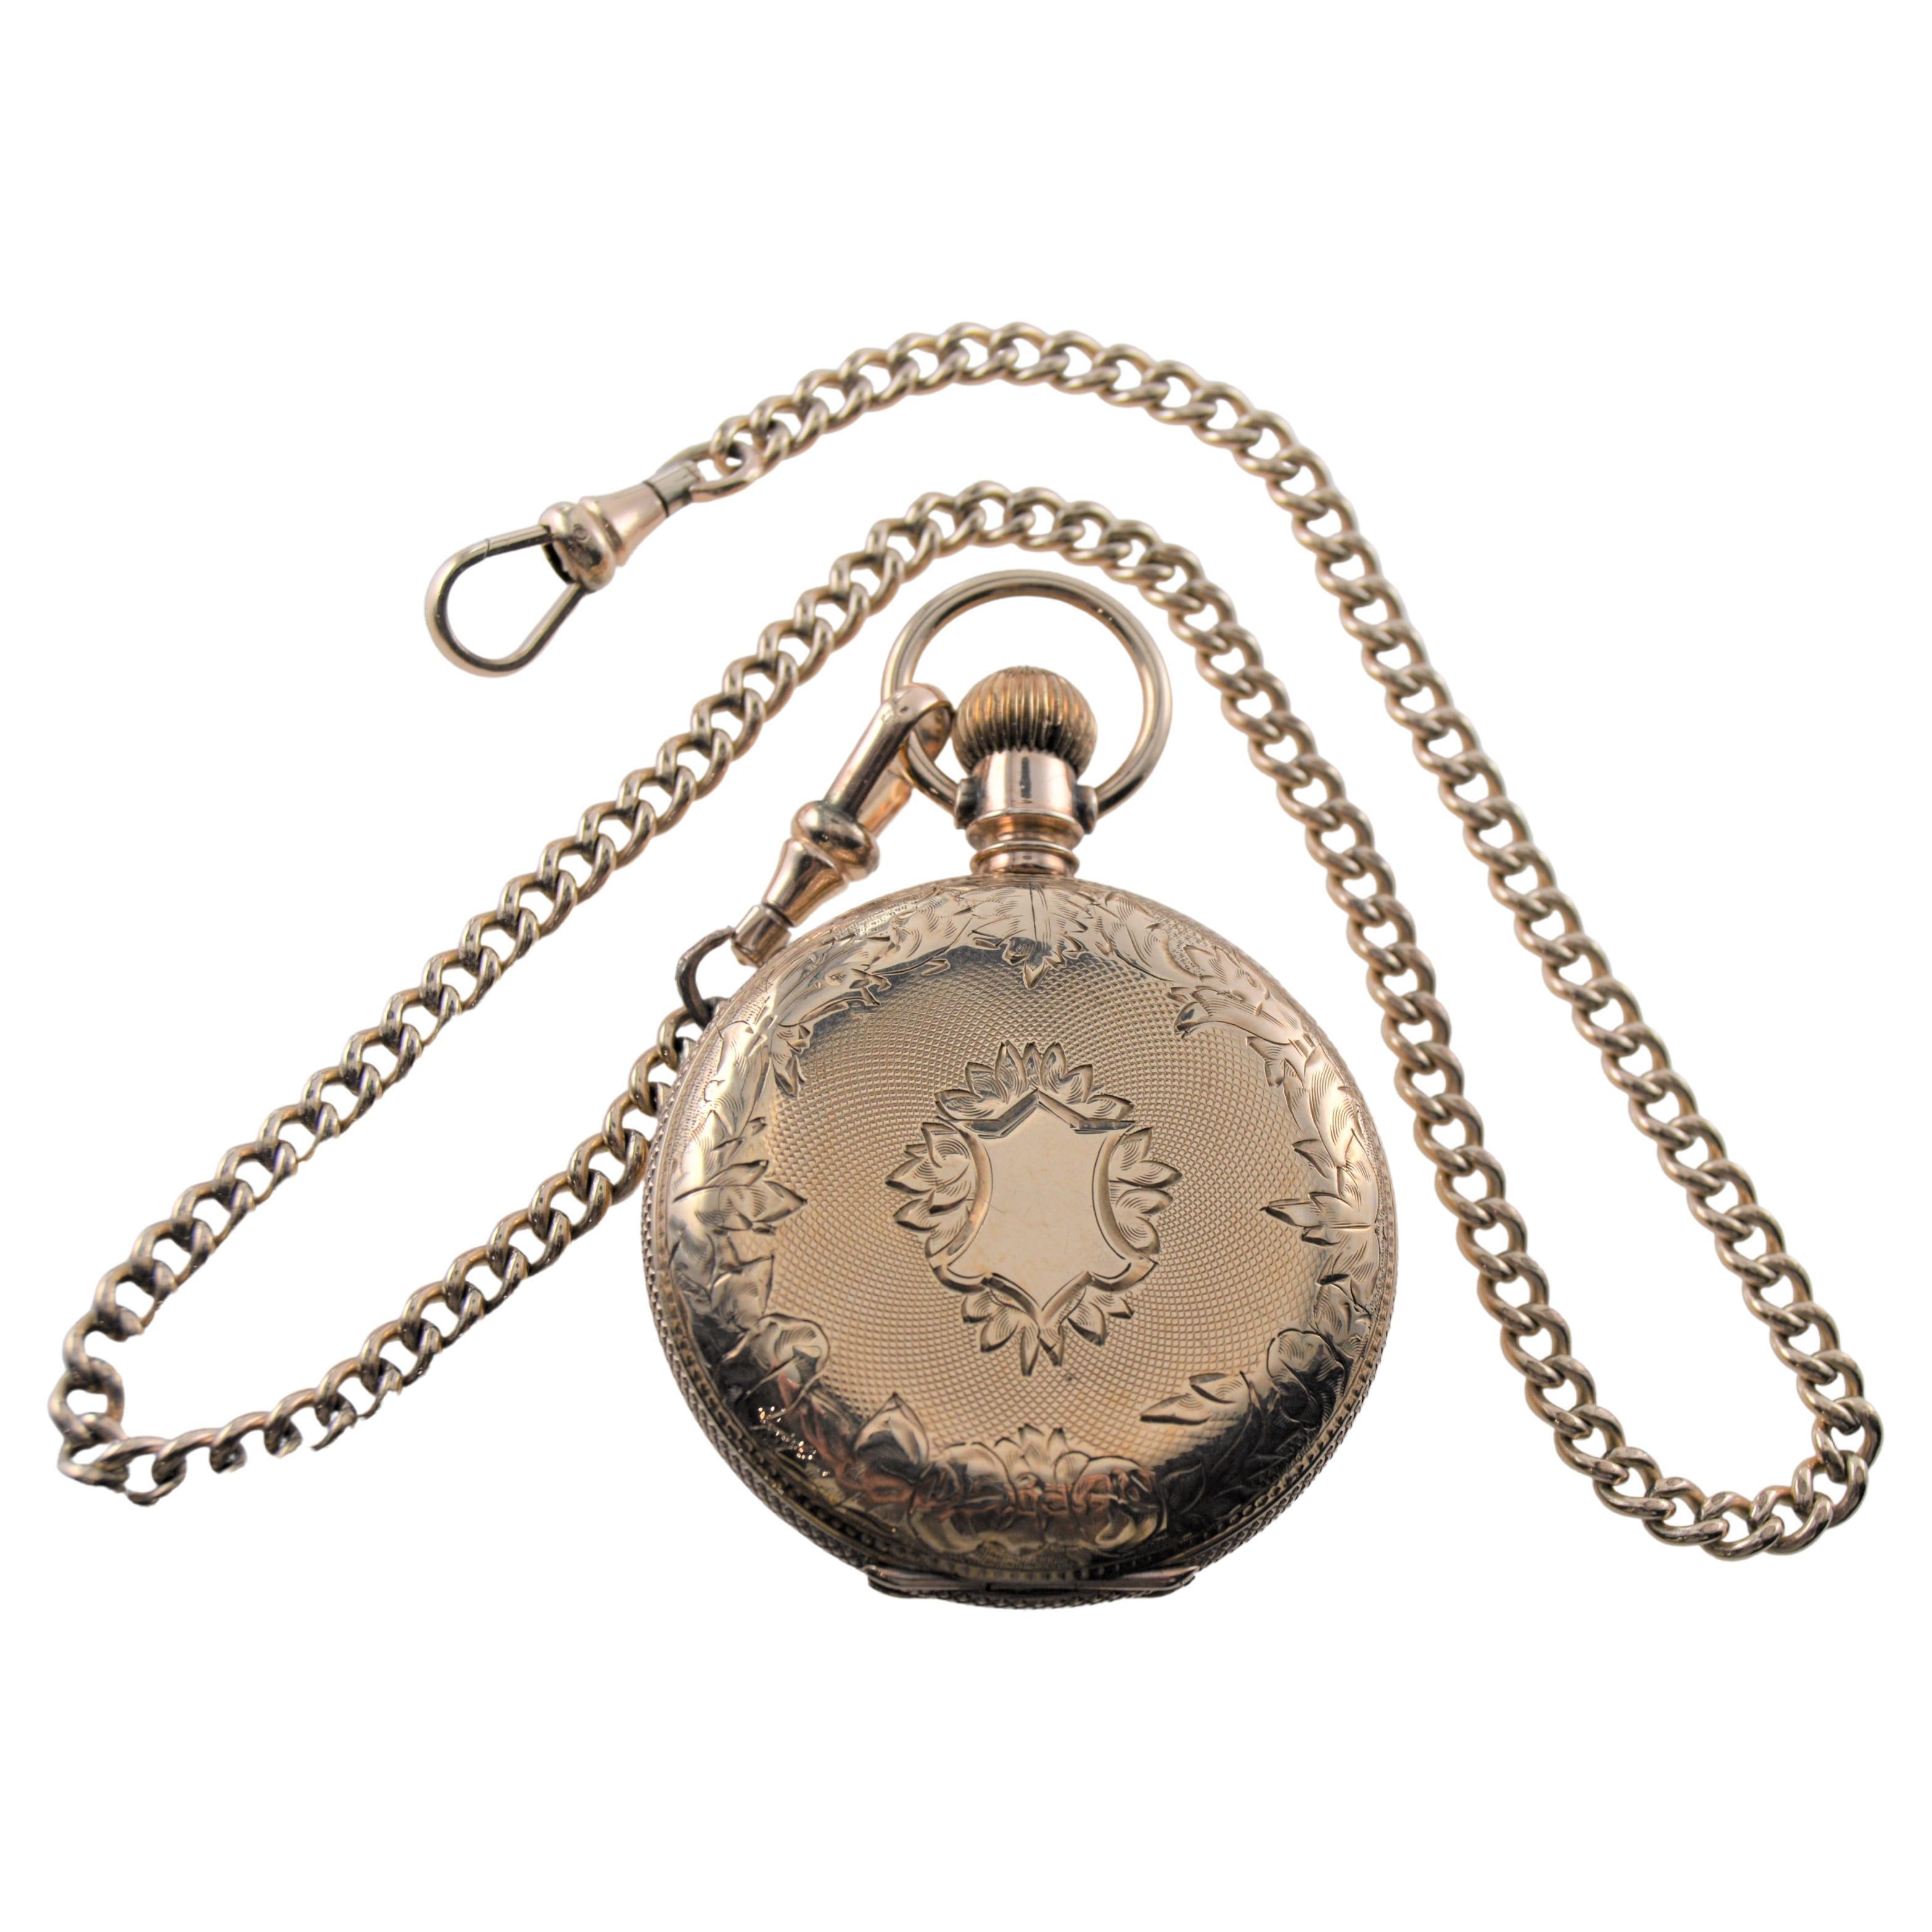  Birks, montre de poche 18 carats gravée à la main Circa 1887